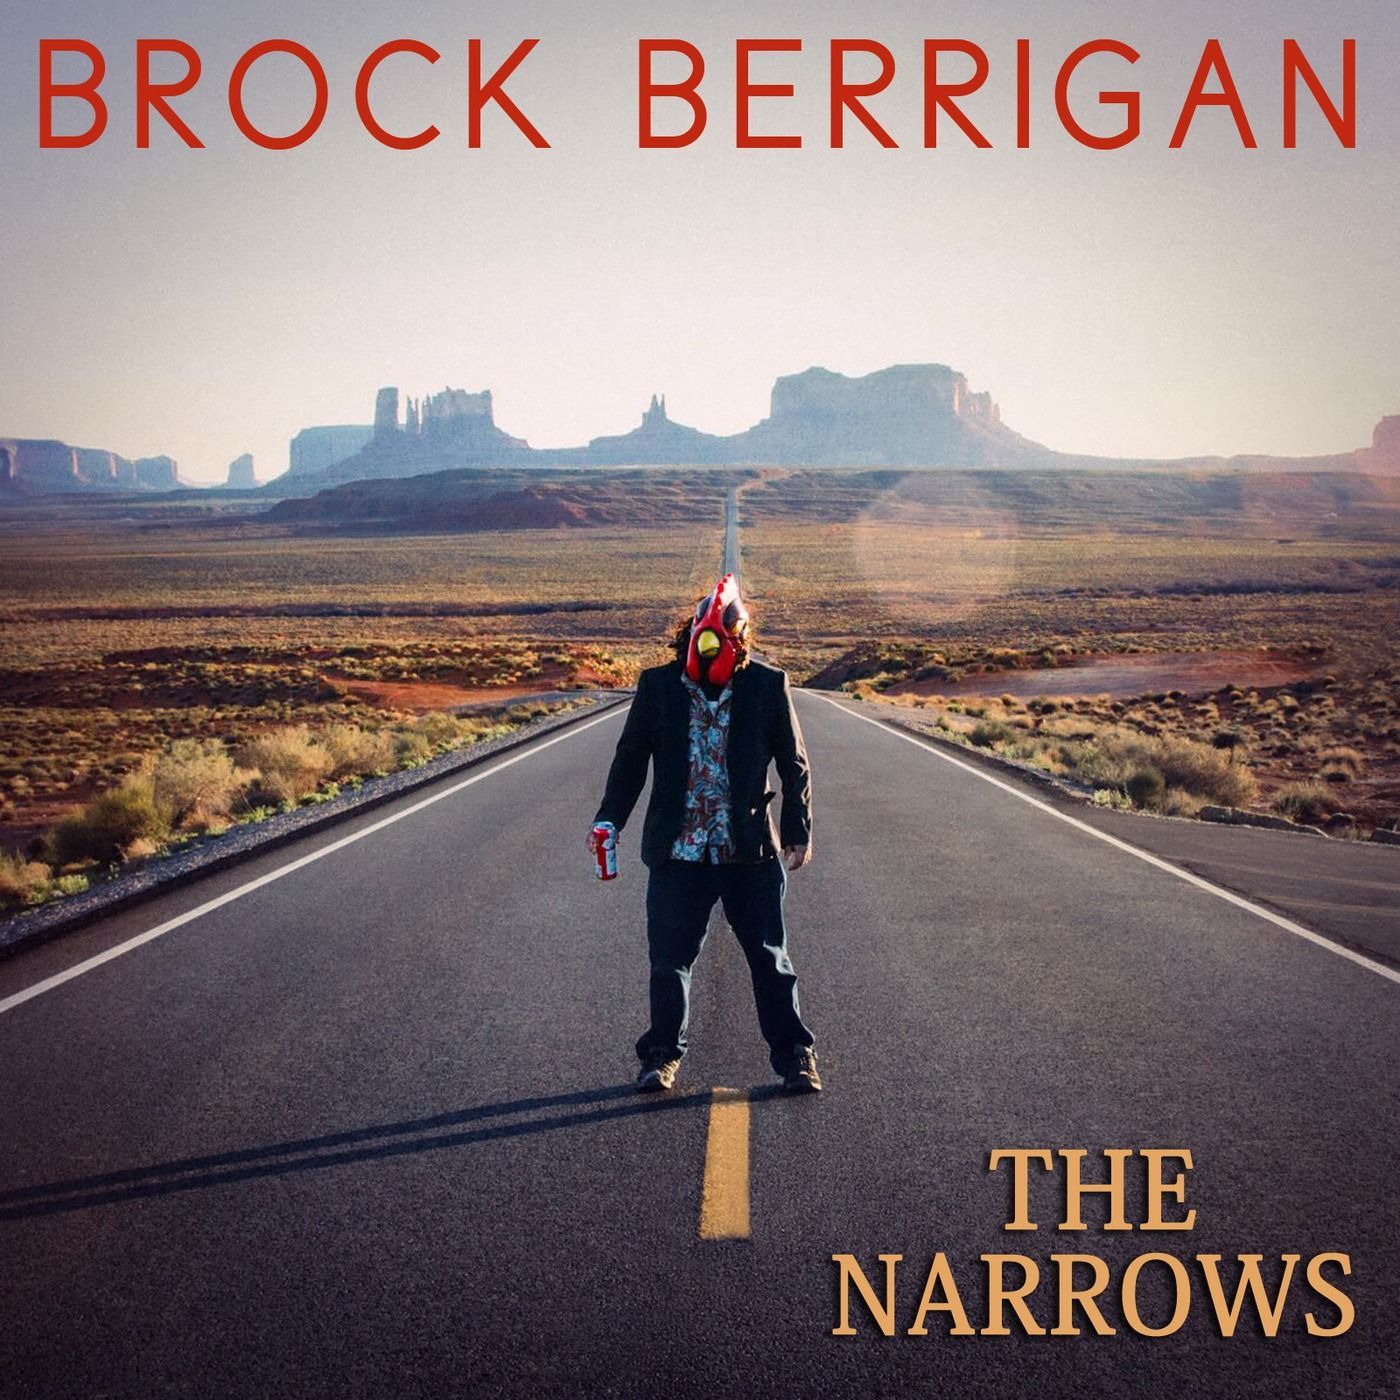 Brock Berrigan - The Narrows (2018)